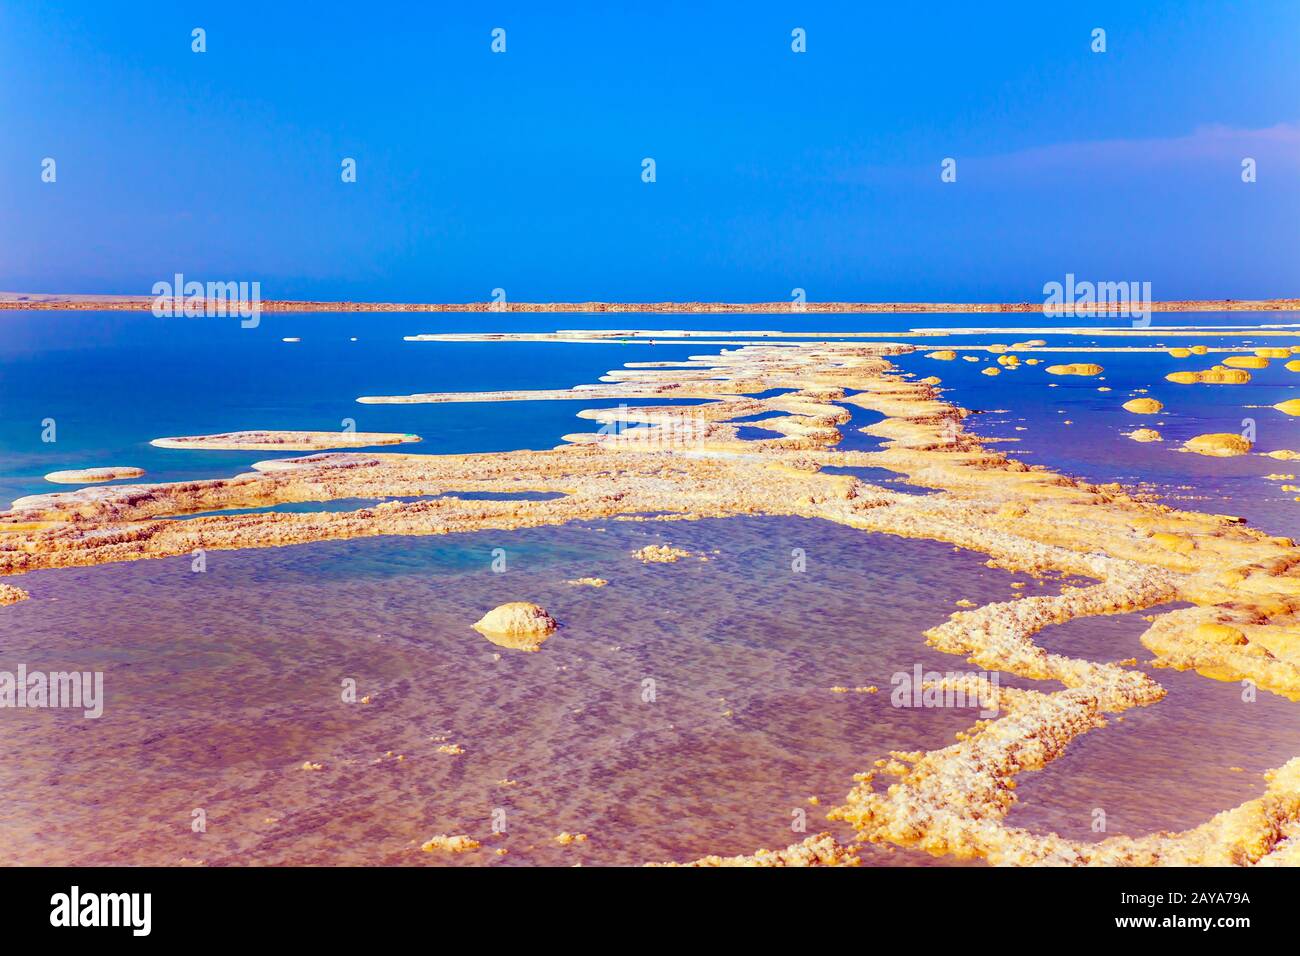 Therapeutic Dead Sea, Israel Stock Photo